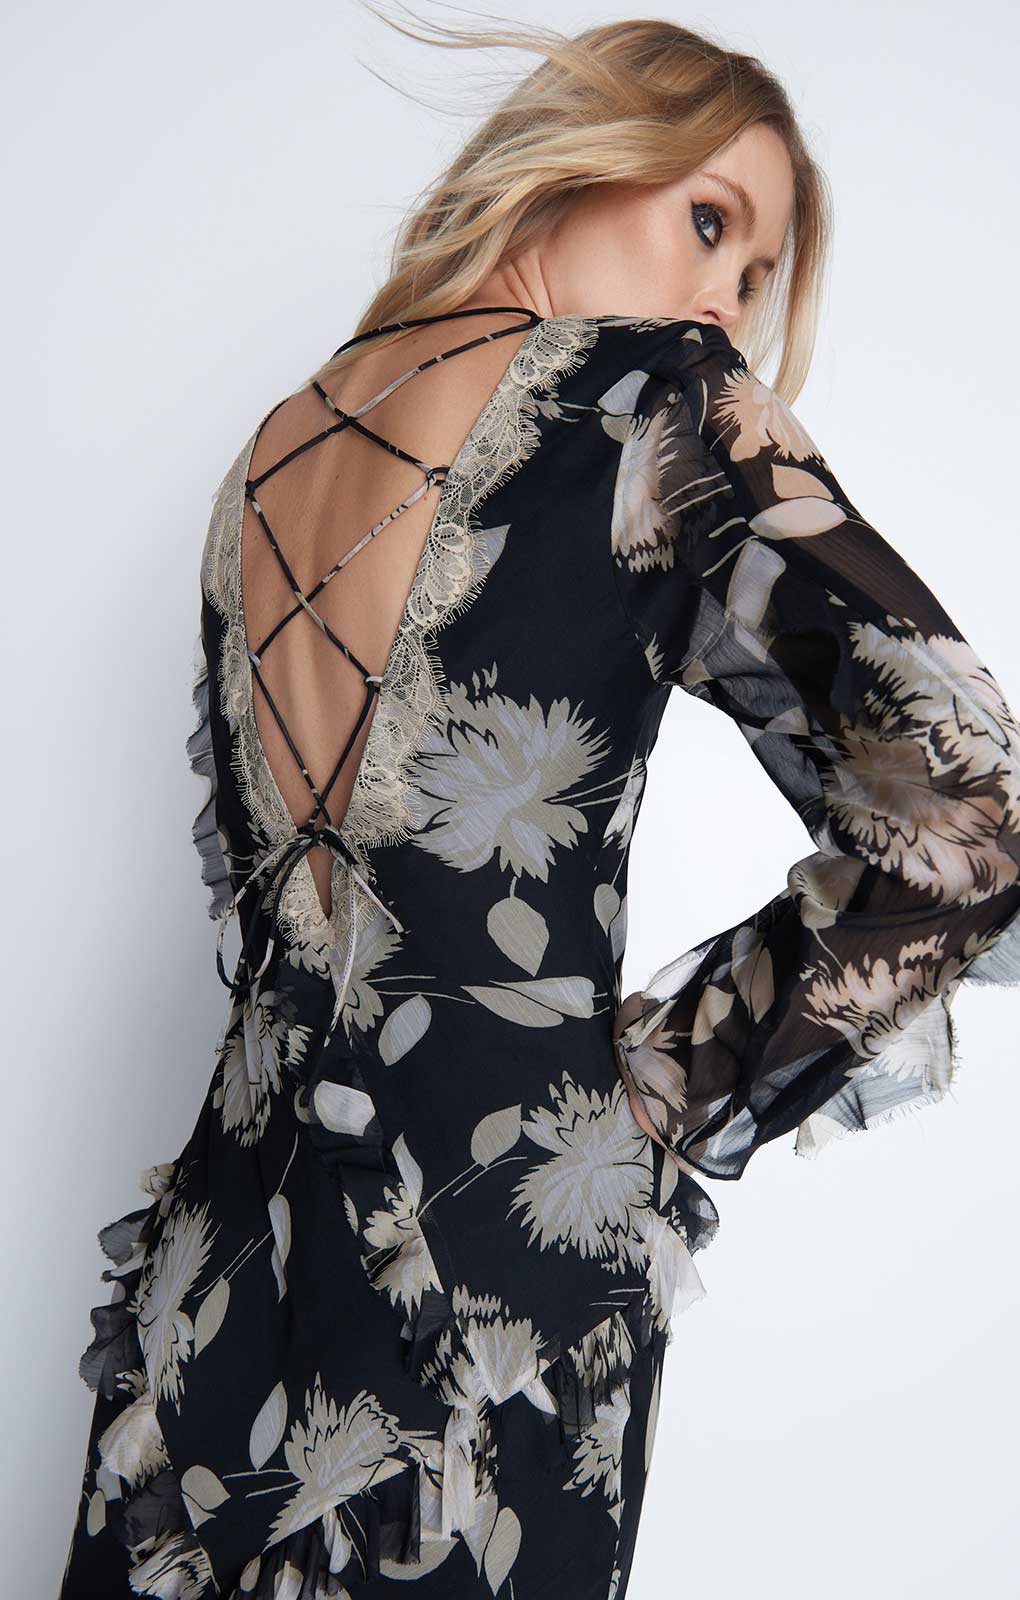 Warehouse Black Chiffon Lace Maxi Dress product image